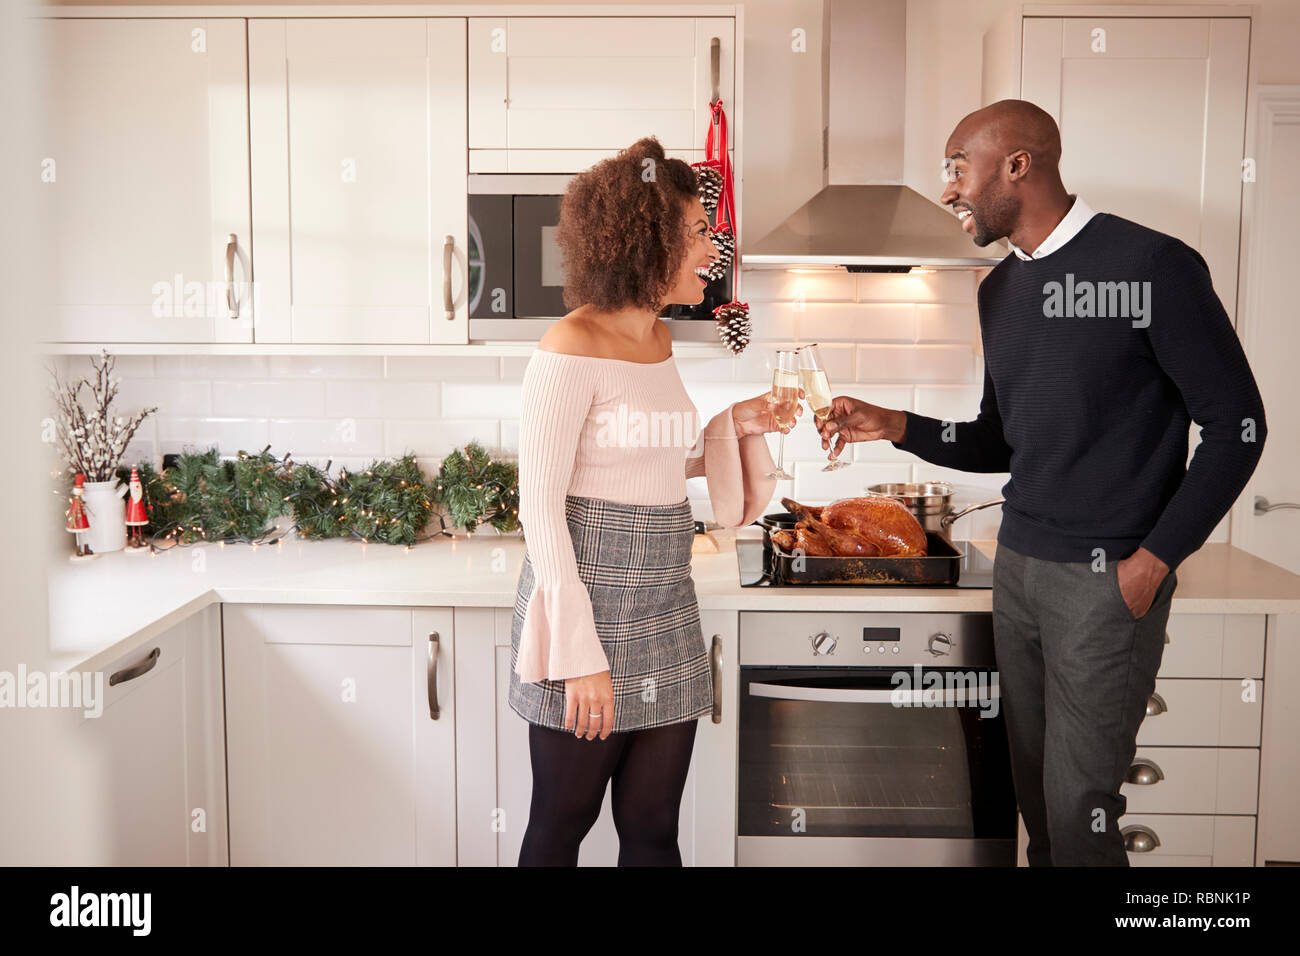 Les jeunes adultes mixed race couple faire un toast au champagne dans la cuisine tout en préparant le dîner de Noël, side view Banque D'Images